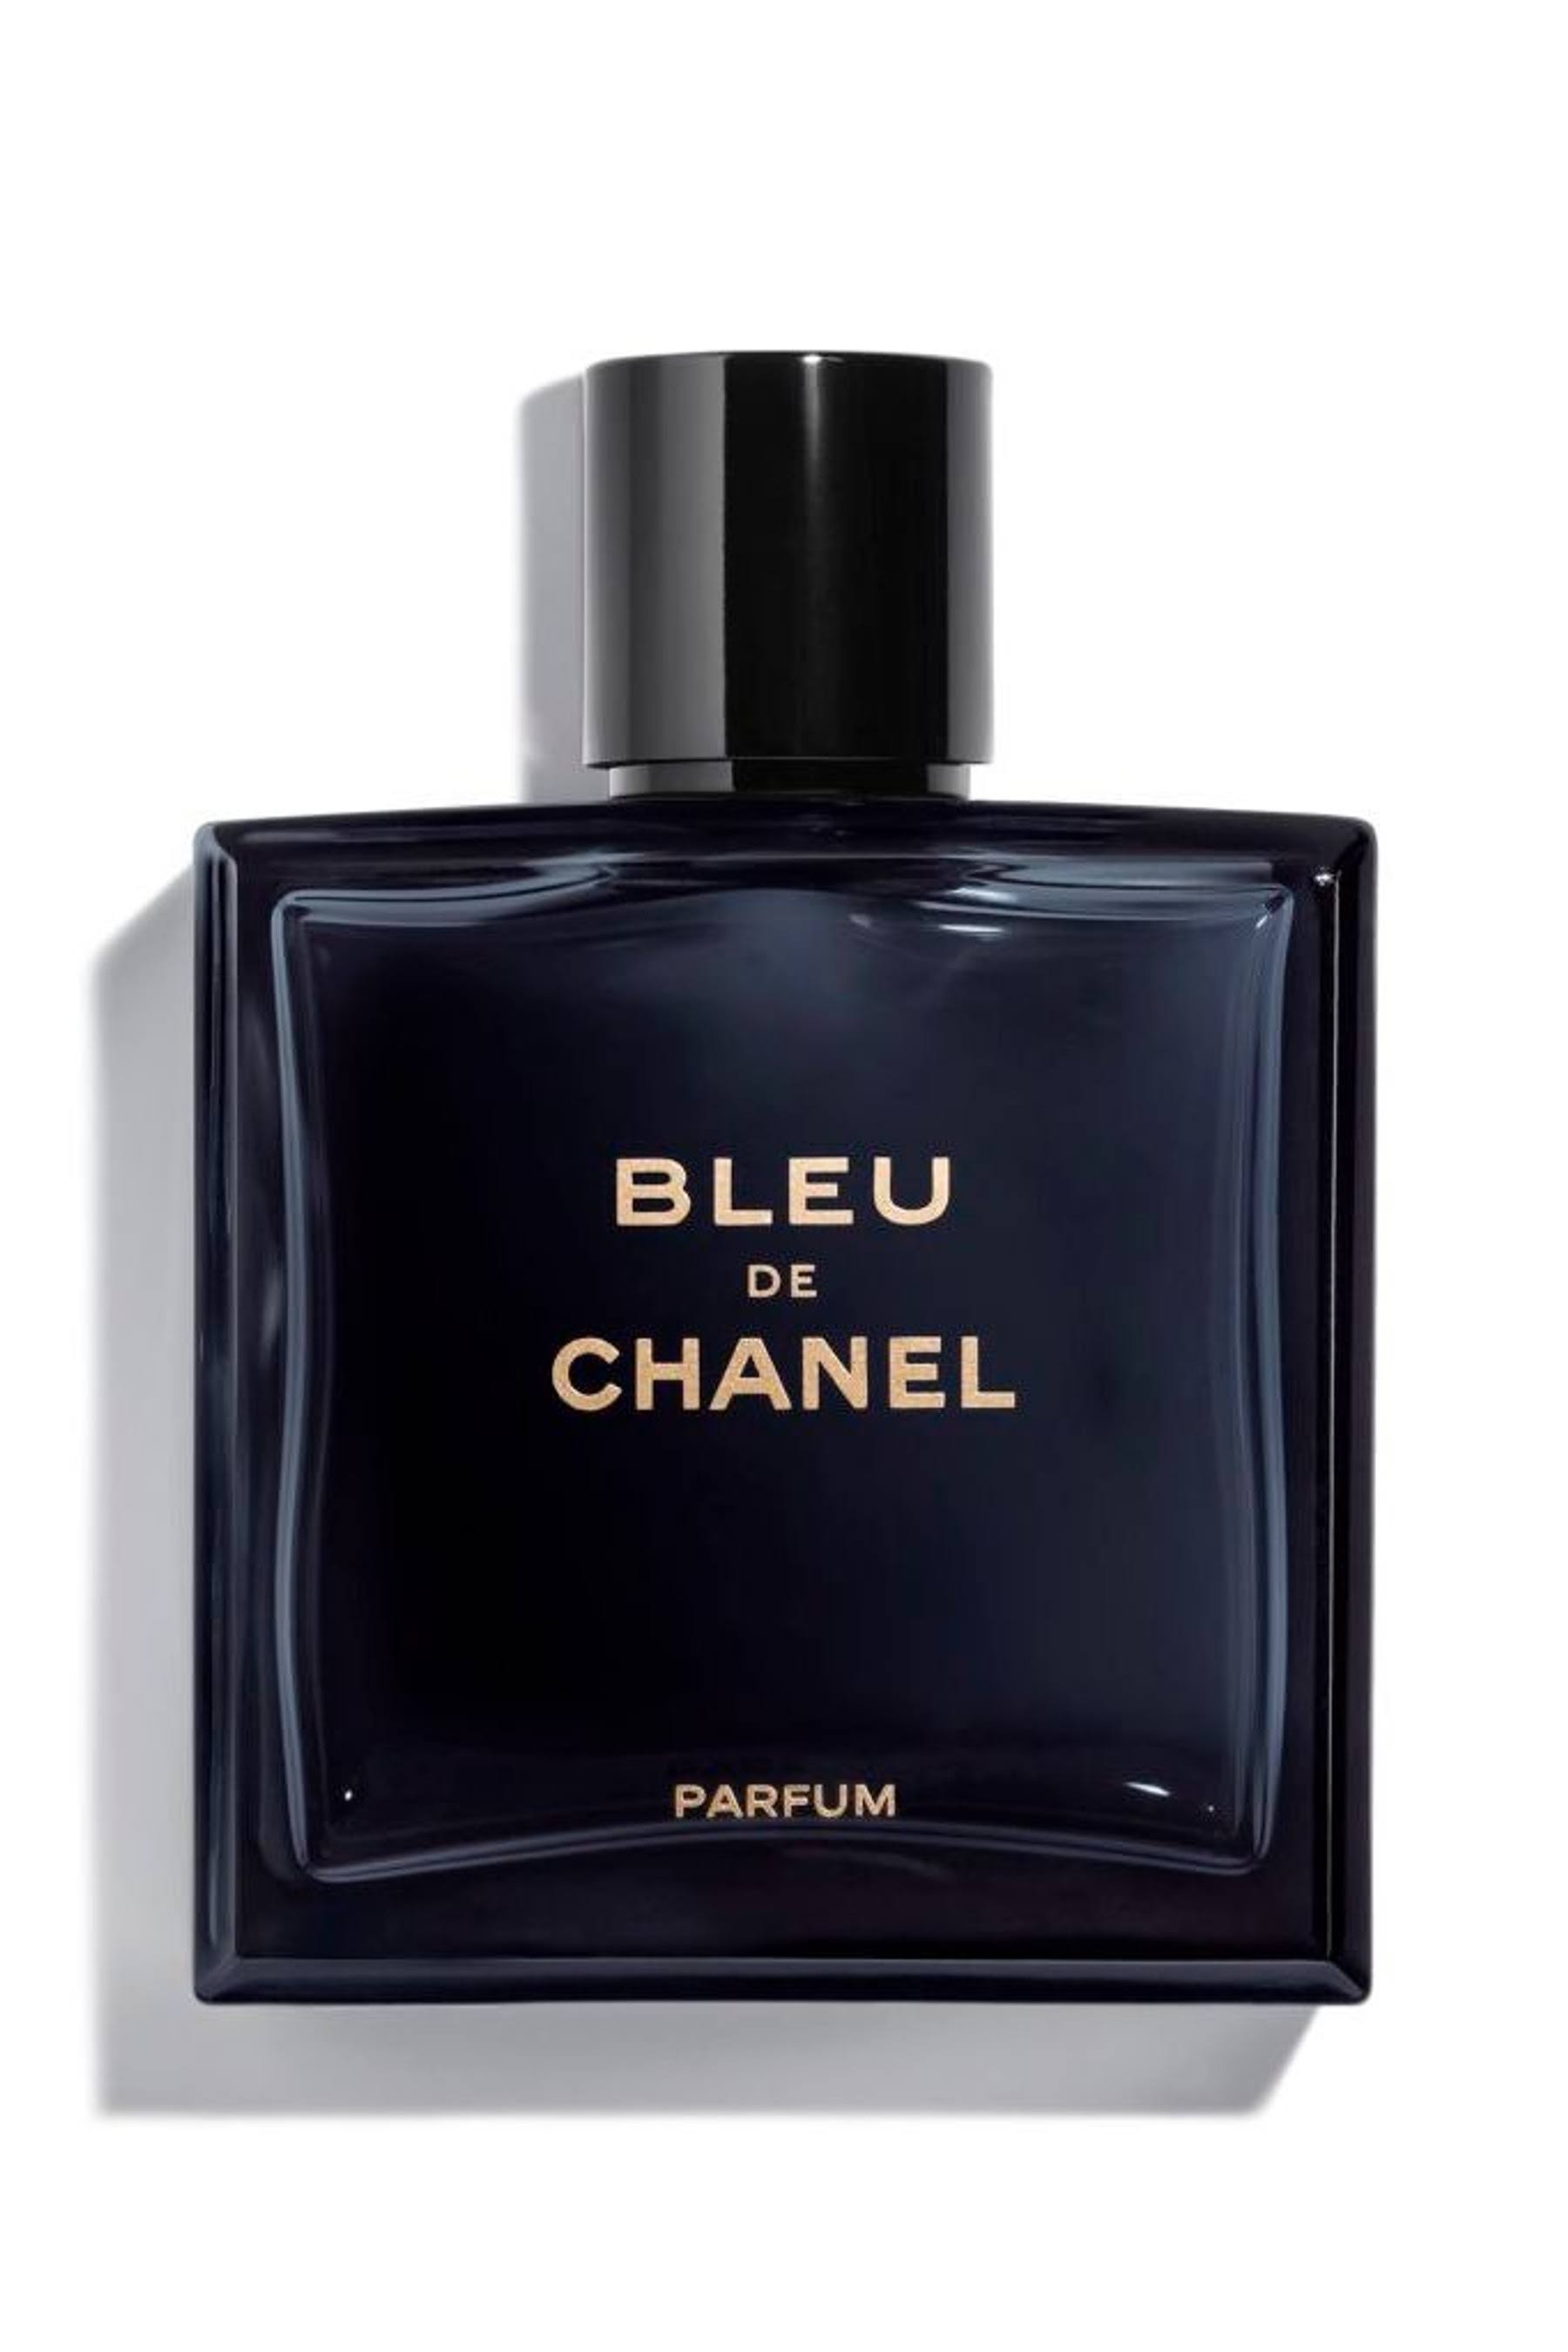 CHANEL Bleu De Chanel Parfum Spray 100ml